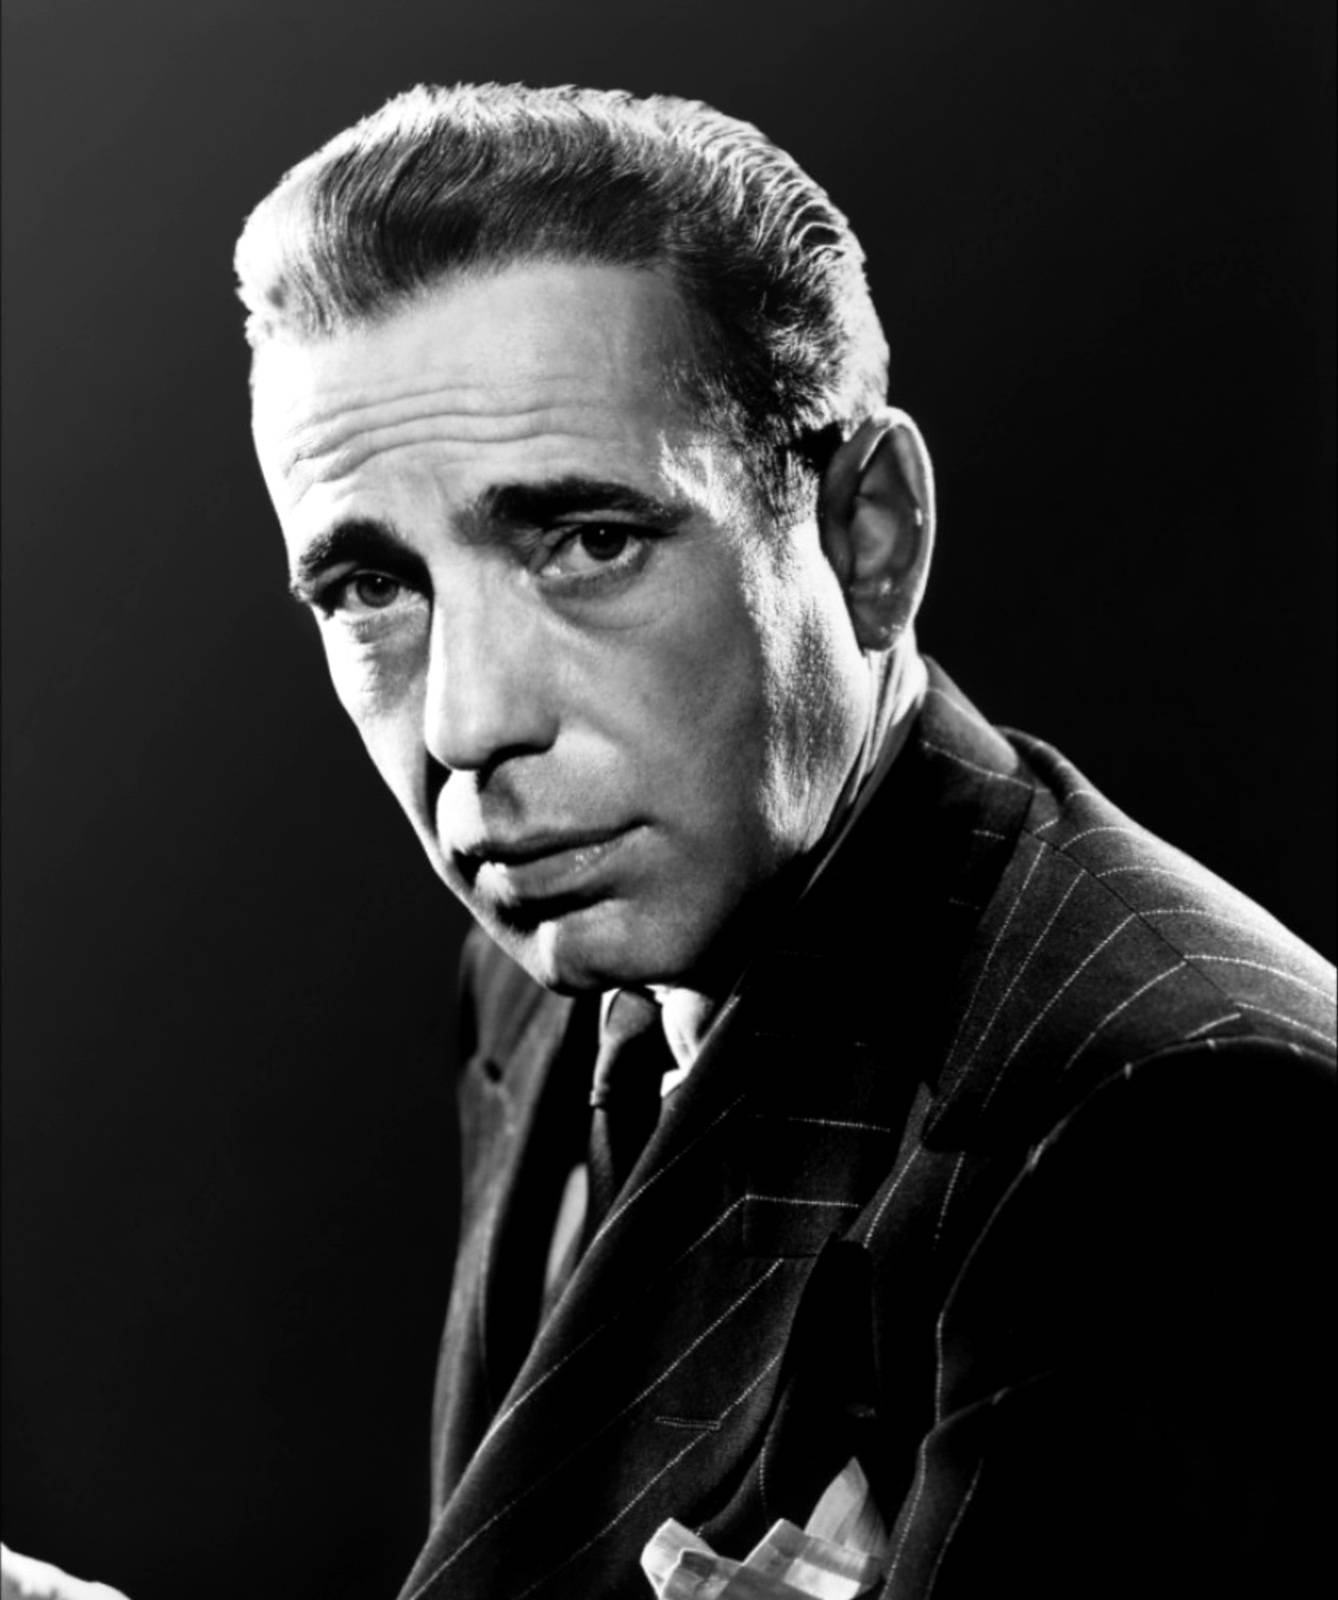 Ernsthafterhumphrey Bogart Wallpaper